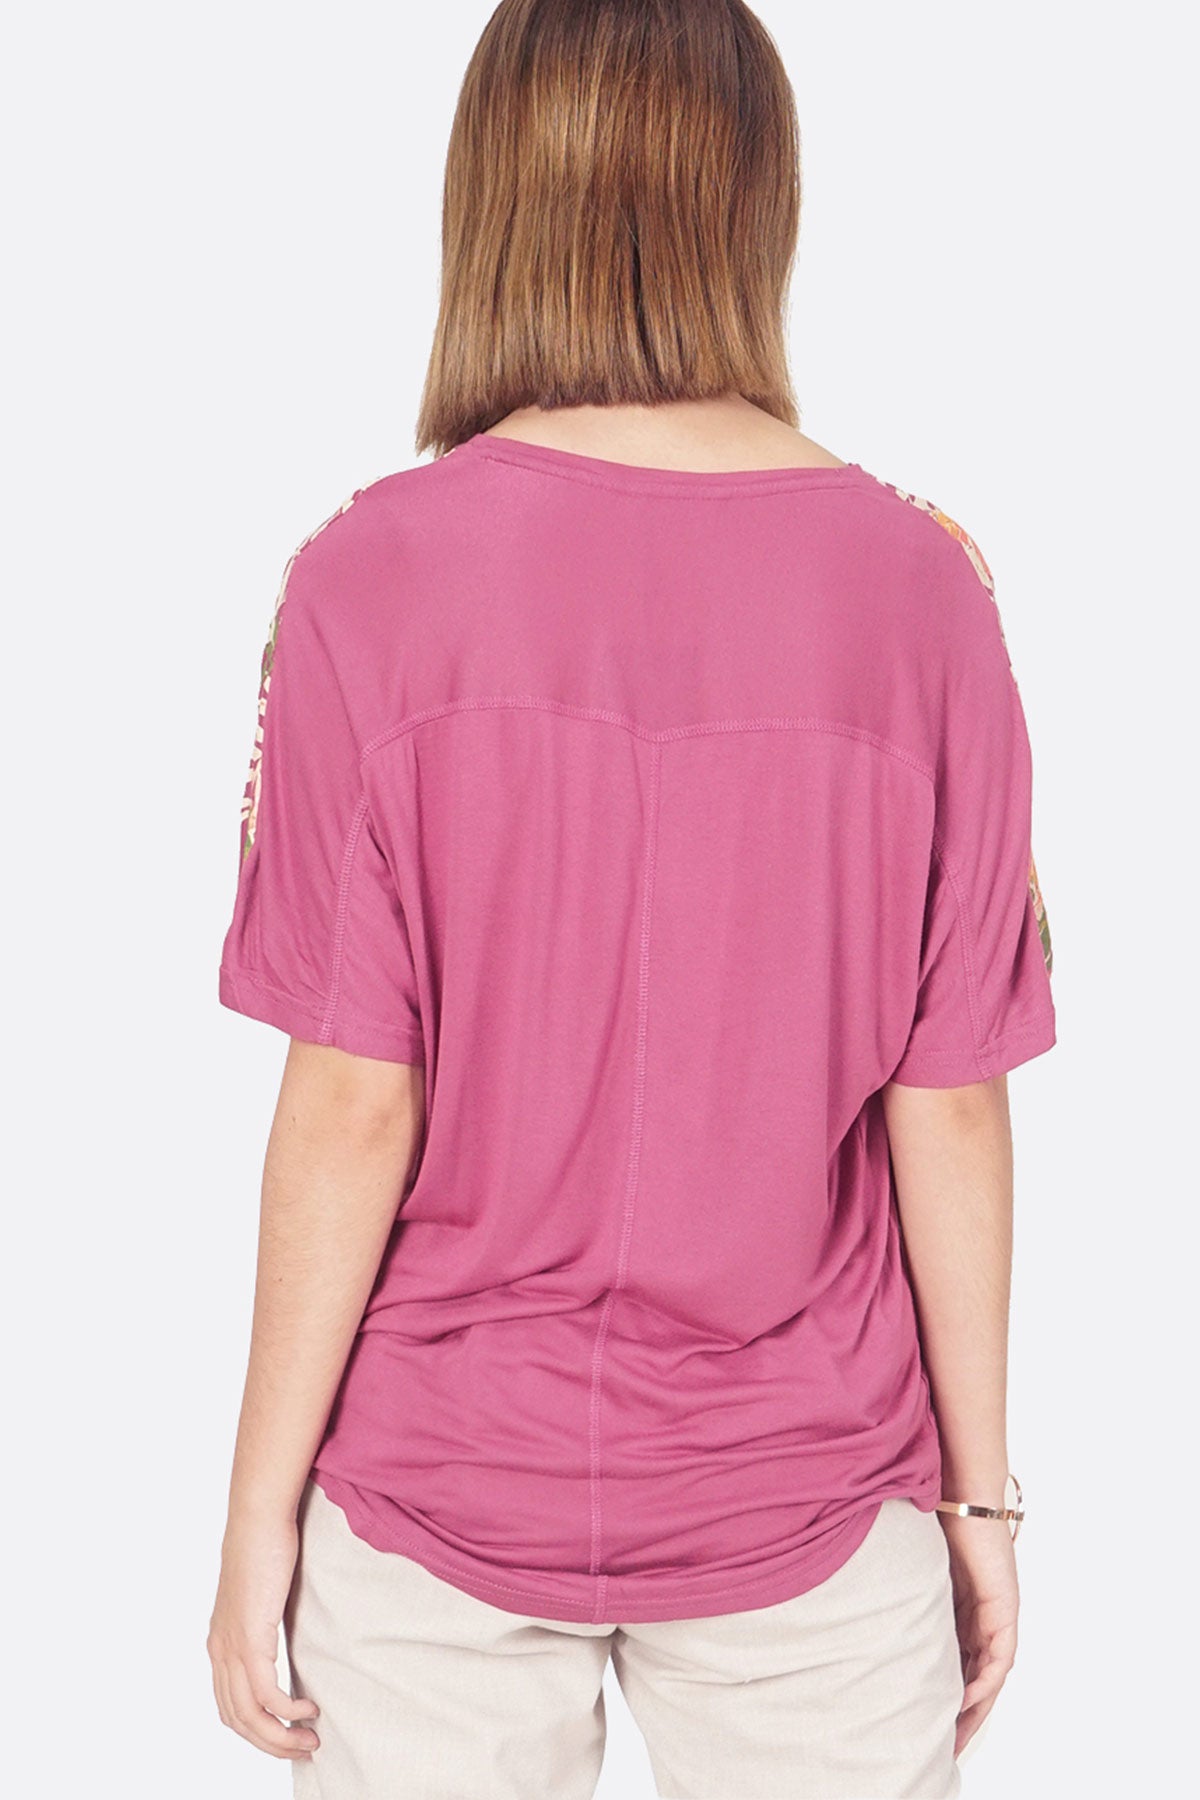 T-Shirt Lengan Pendek Dusty Wine Pink